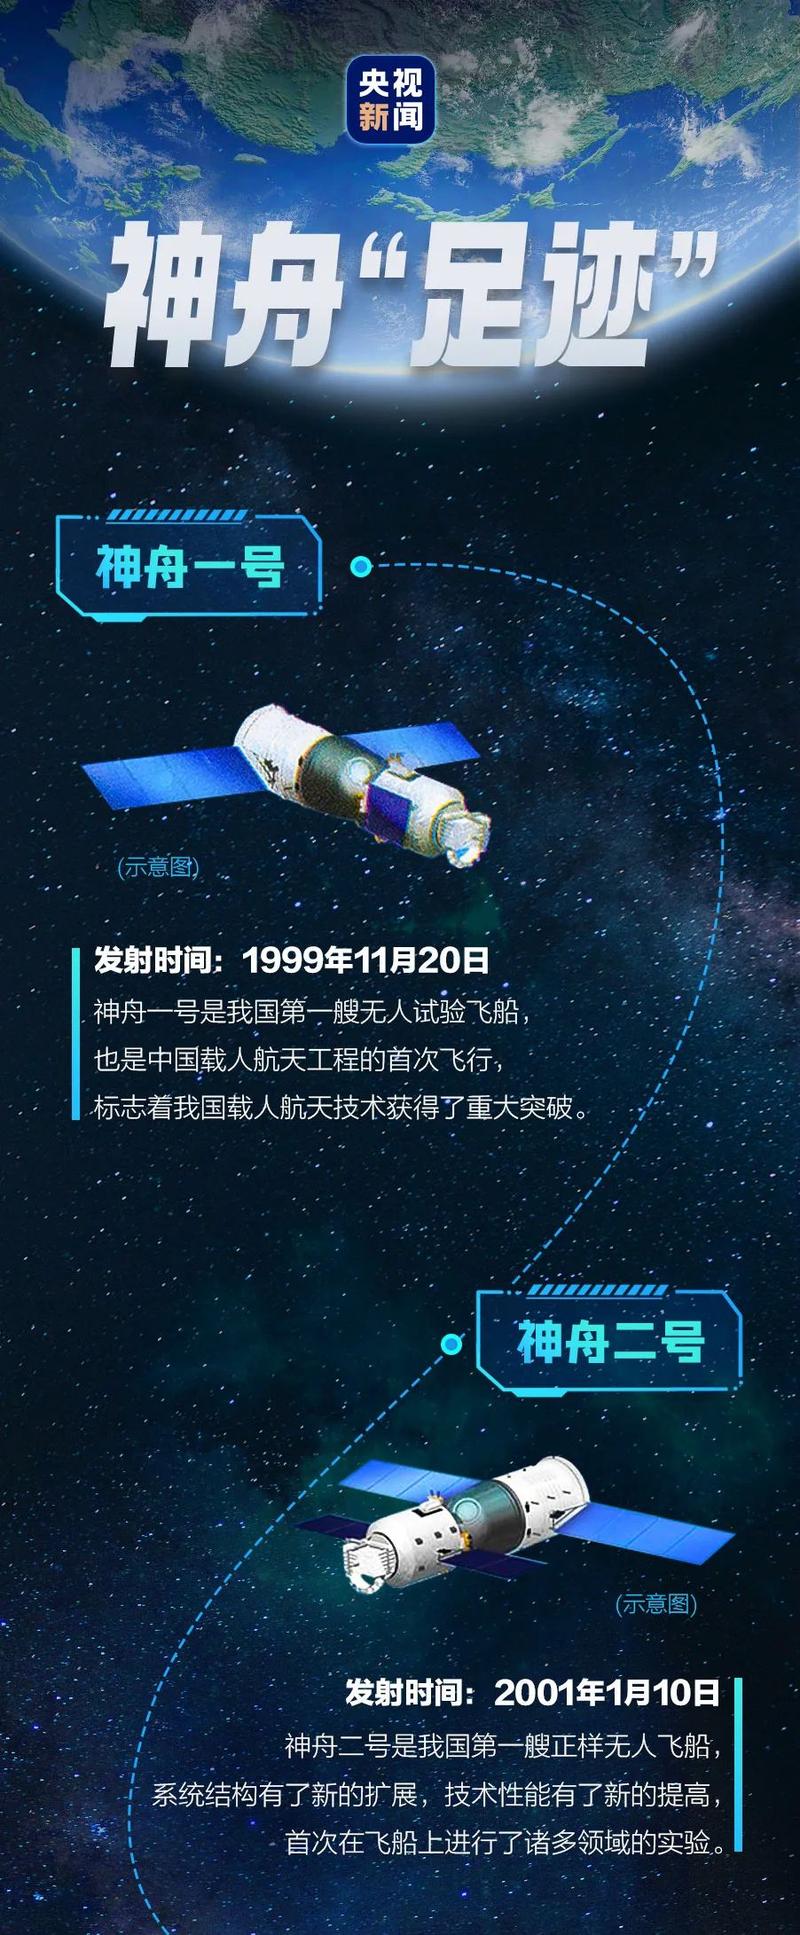 飞船已经在探索宇宙的路上走过了22年,见证中国载人航天一步一个脚印